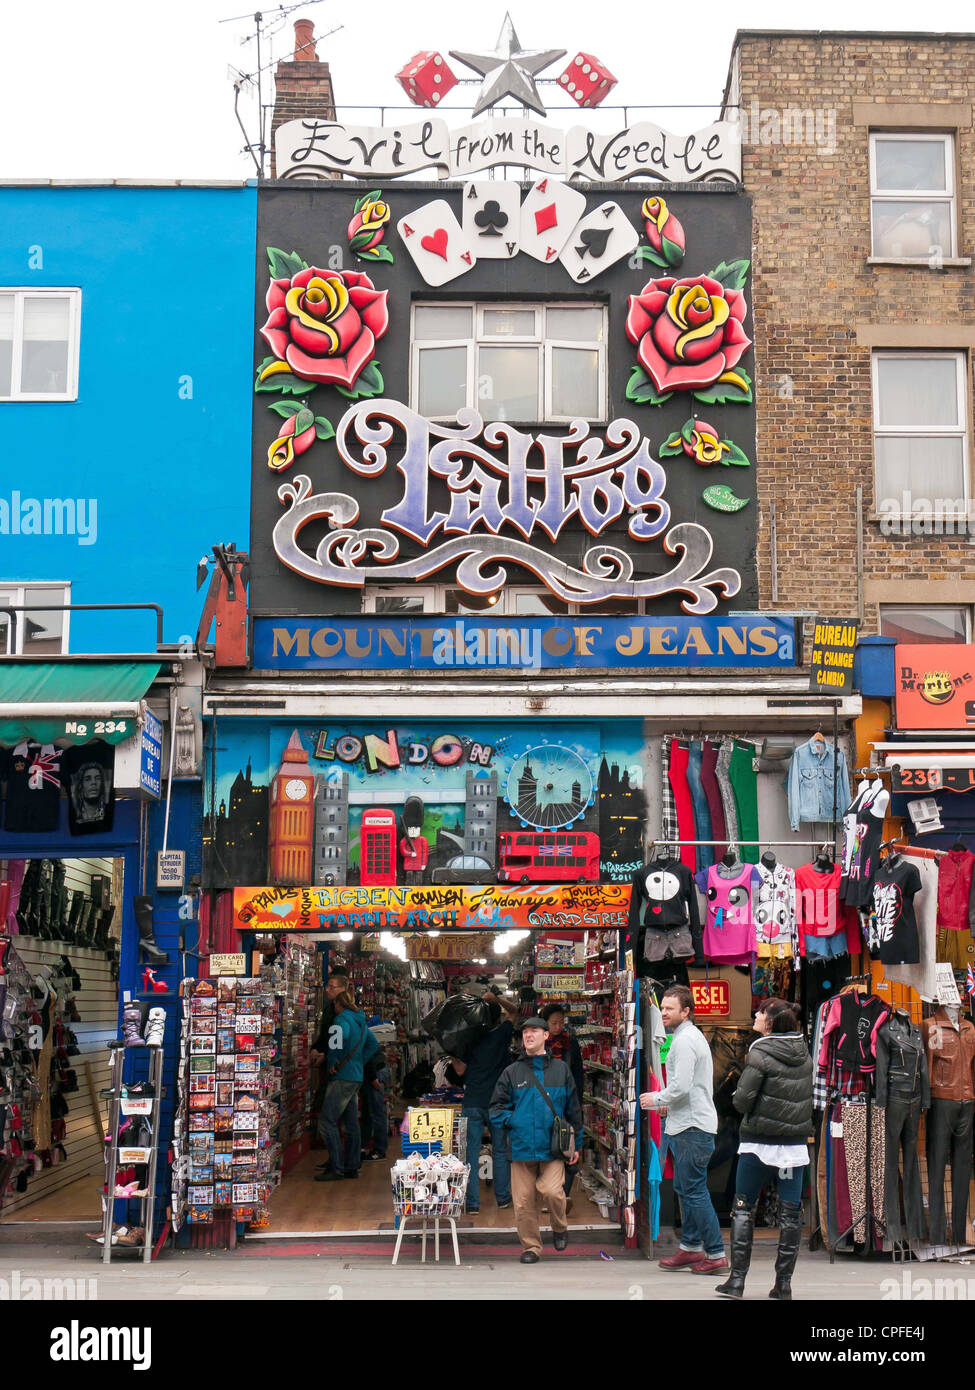 Gli amanti dello shopping e ai turisti la visualizzazione di un utique e salotto tattoo in una strada nel mercato di Camden, London, Regno Unito Foto Stock